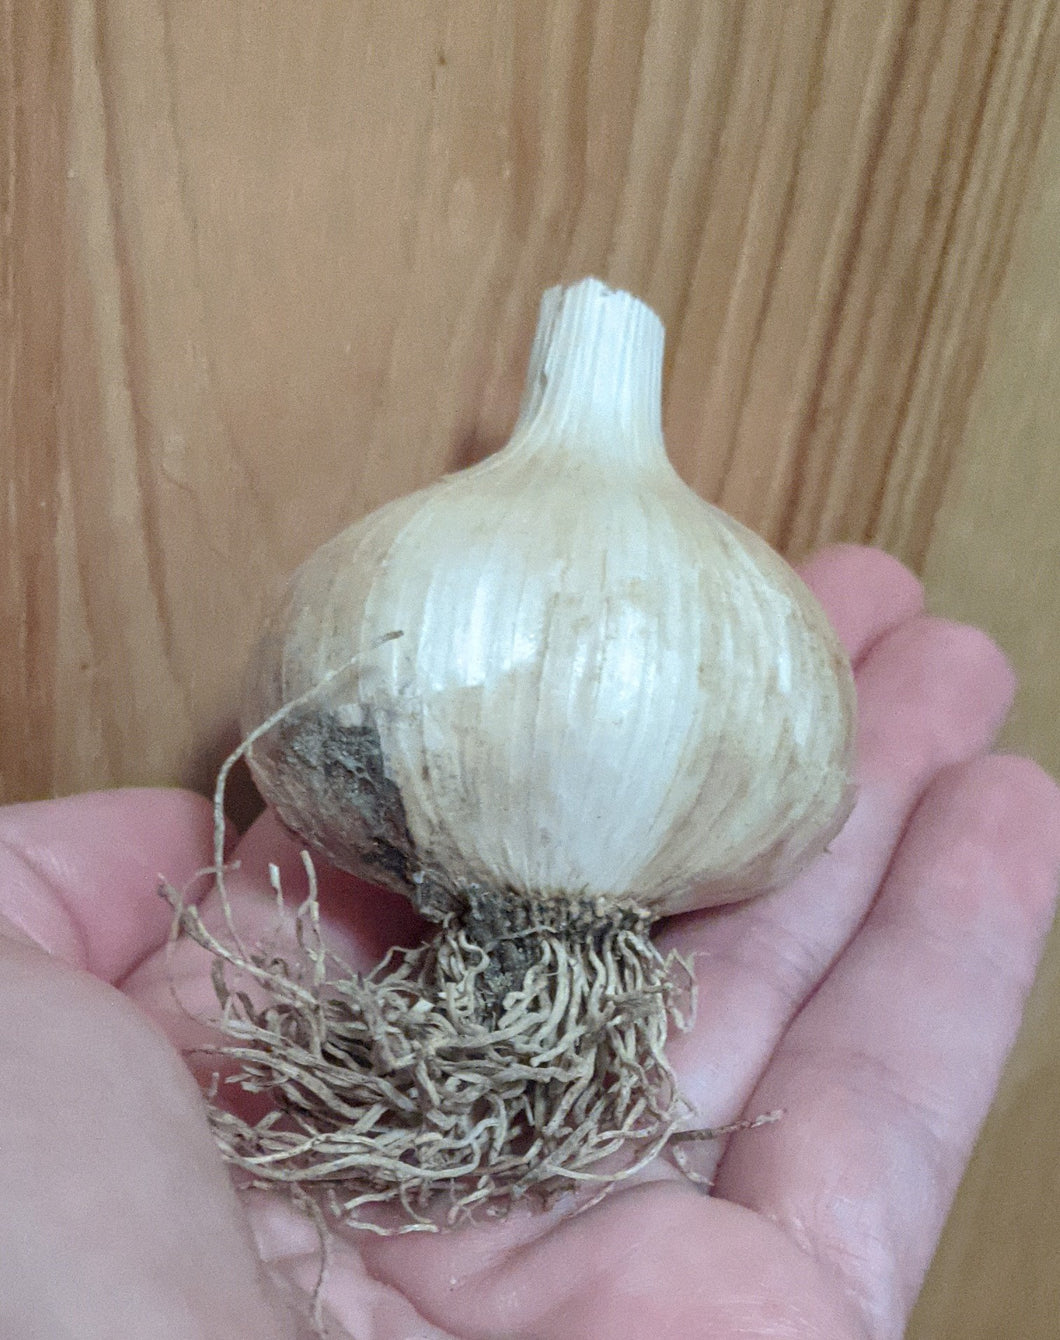 Garlic/onions